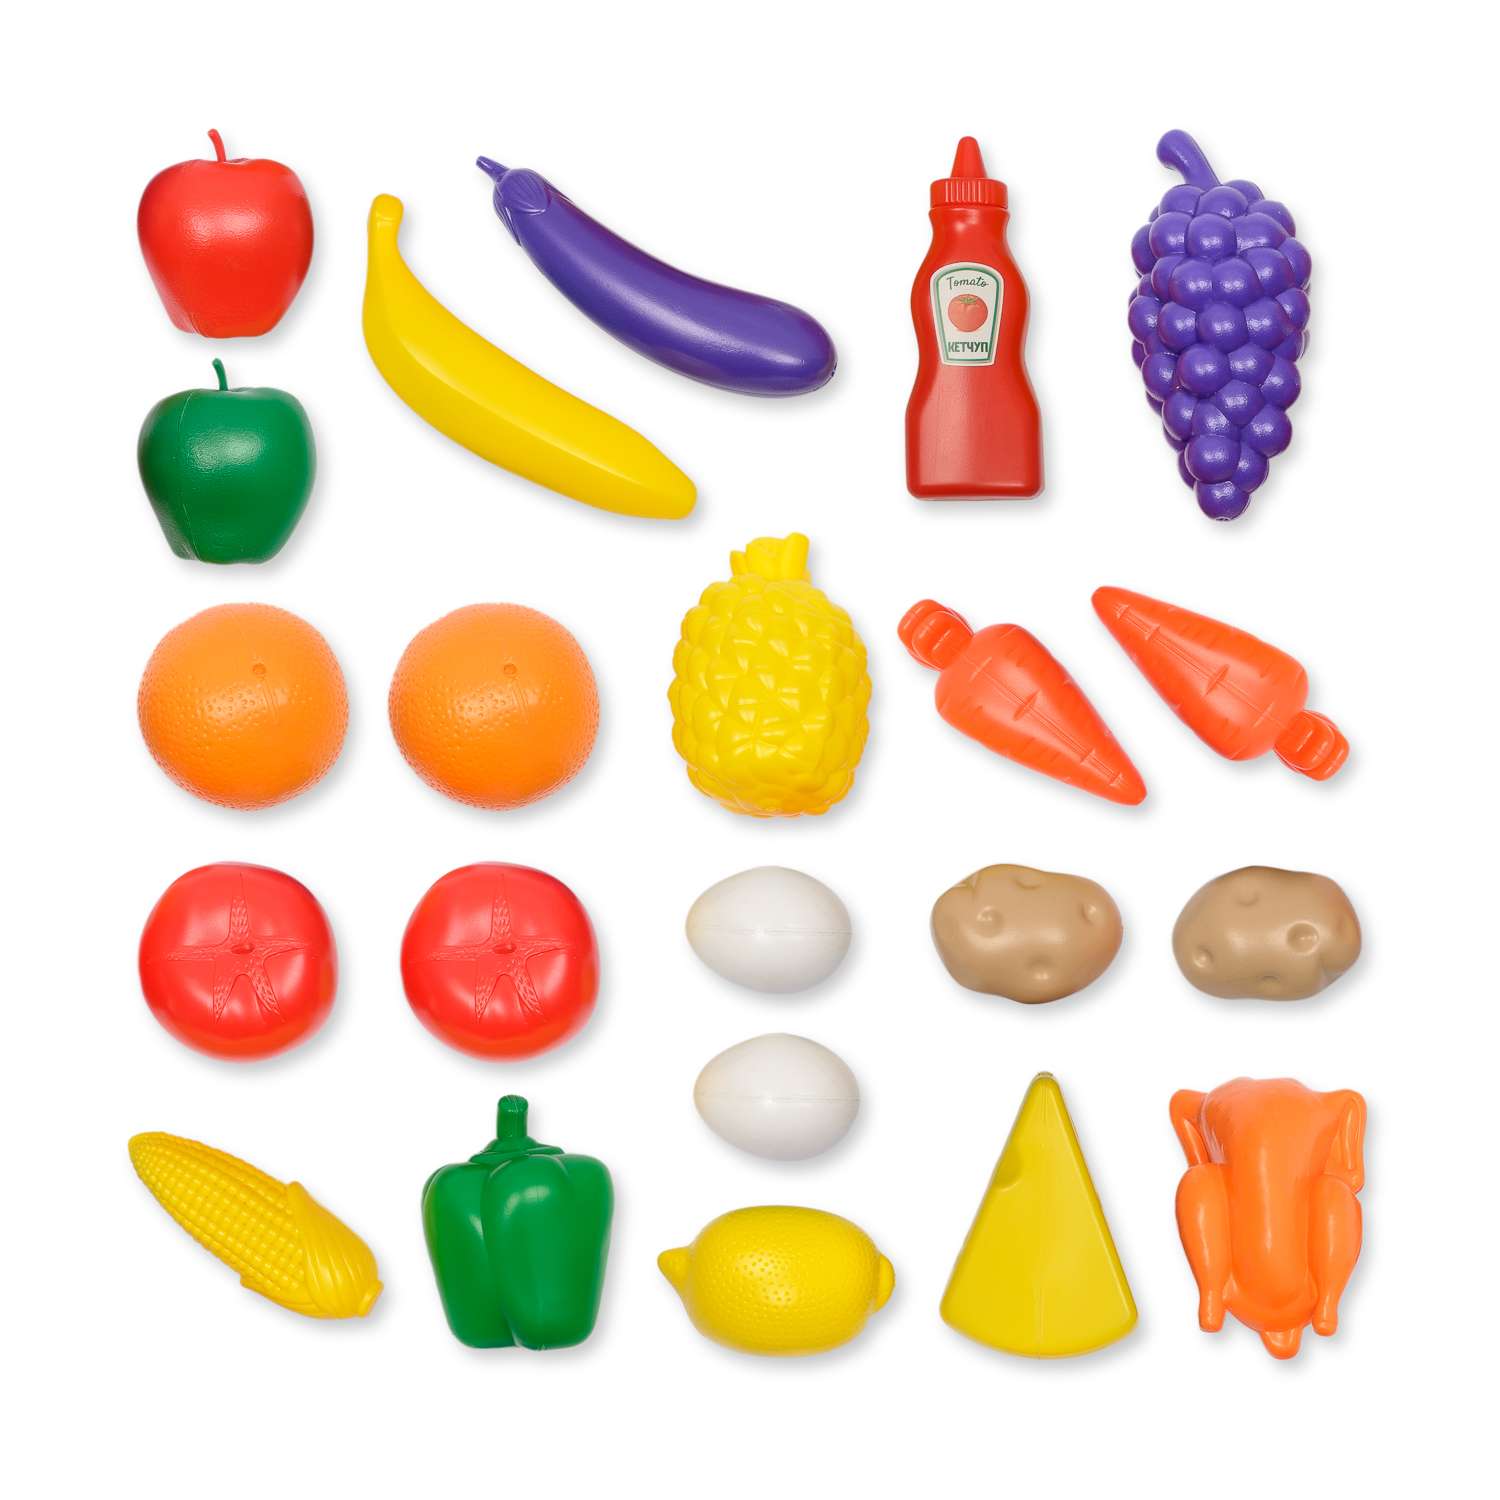 Игровой набор детский Green Plast игрушечные продукты в сумочке 22 элемента - фото 3